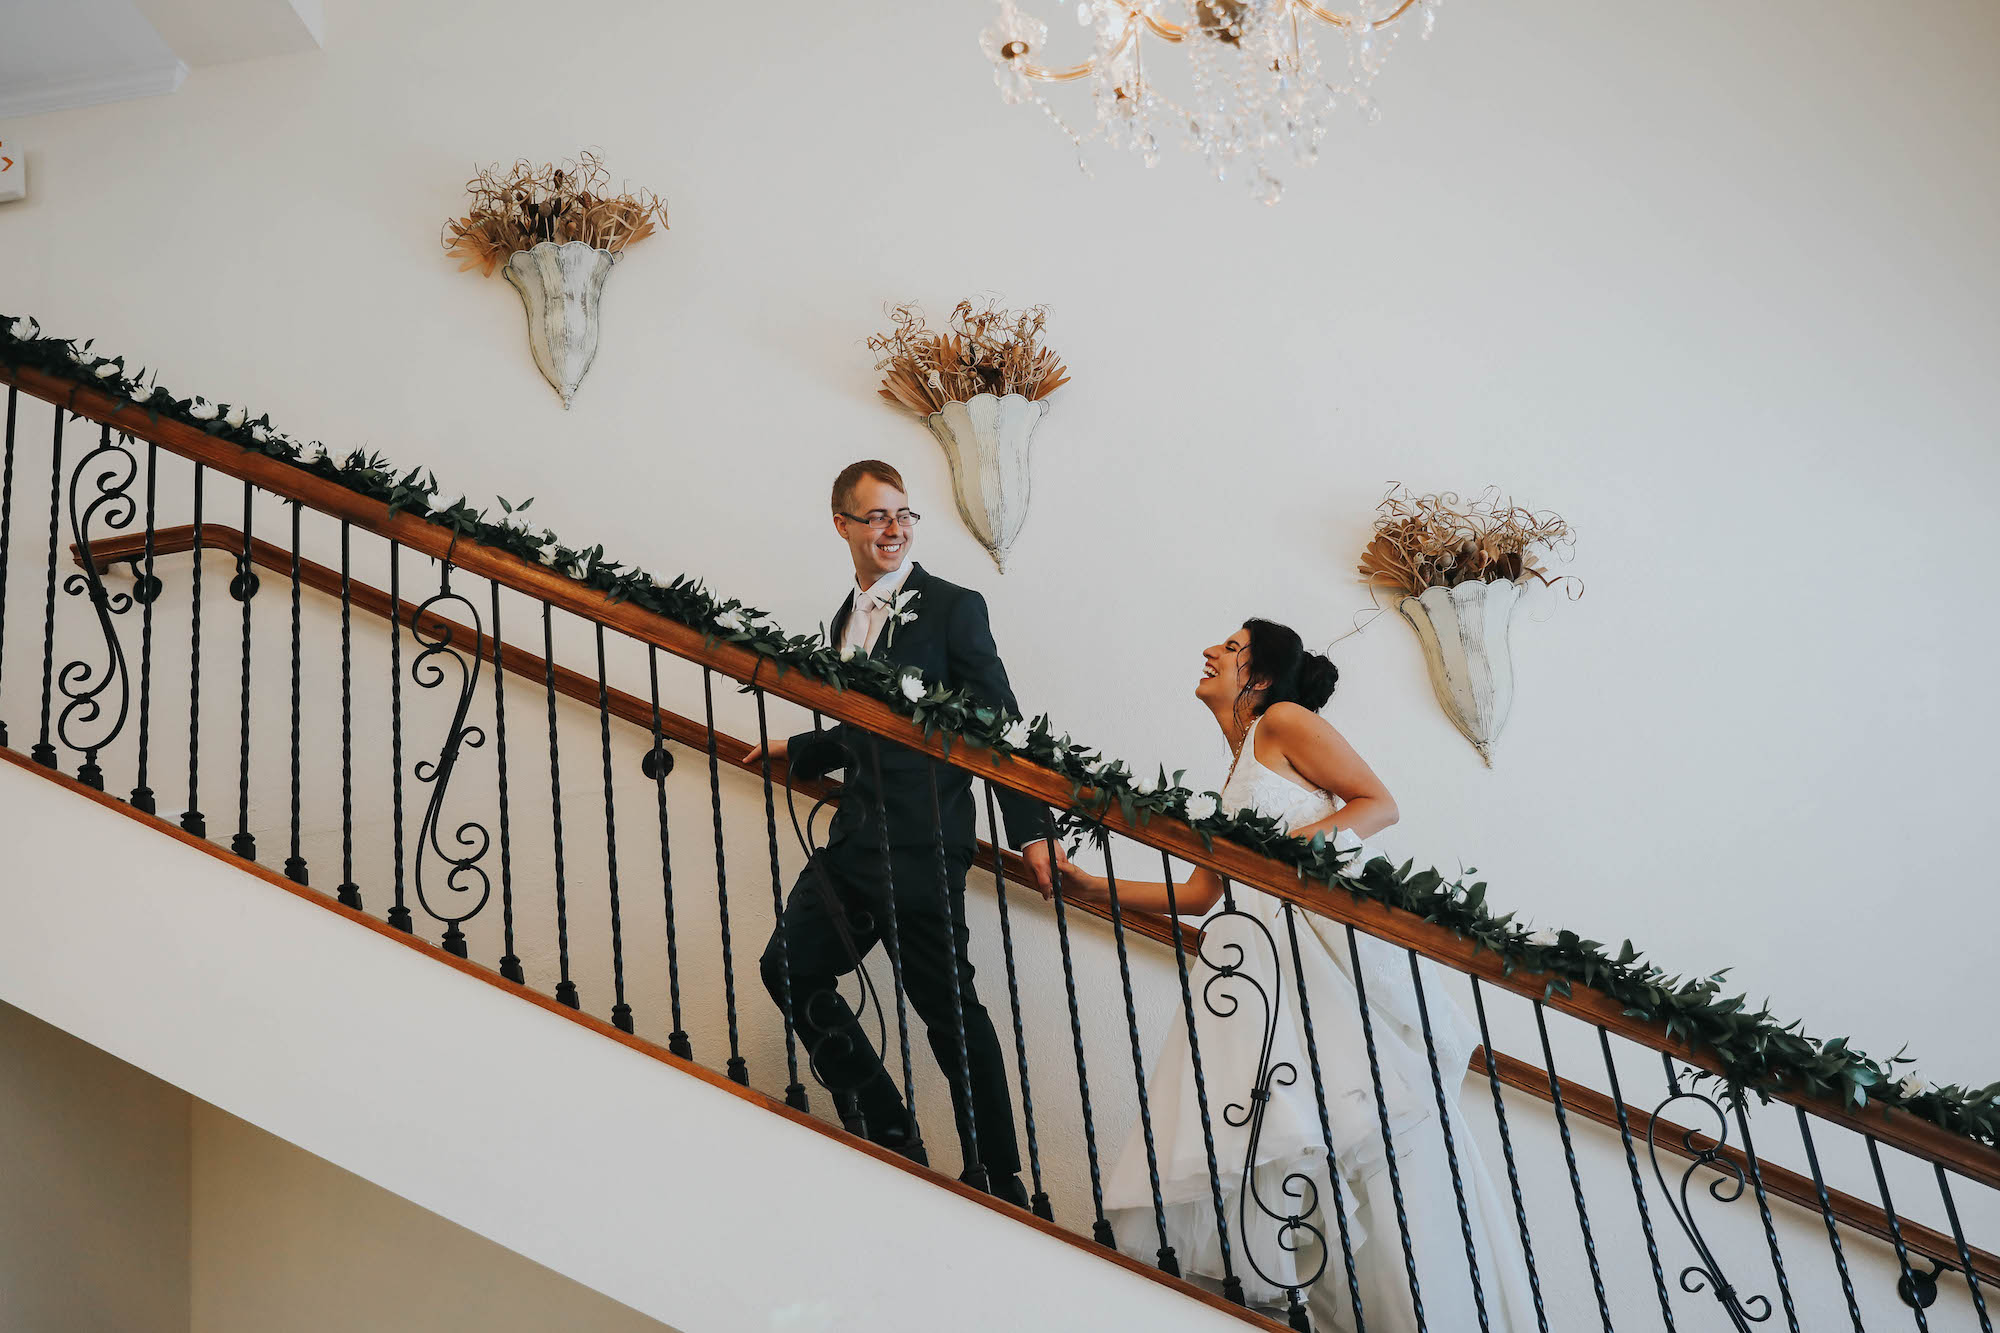 Florida Bride and Groom Go Upstairs During Wedding Reception | Tampa Bay Wedding Venue Beso Del Sol Resort in Dunedin